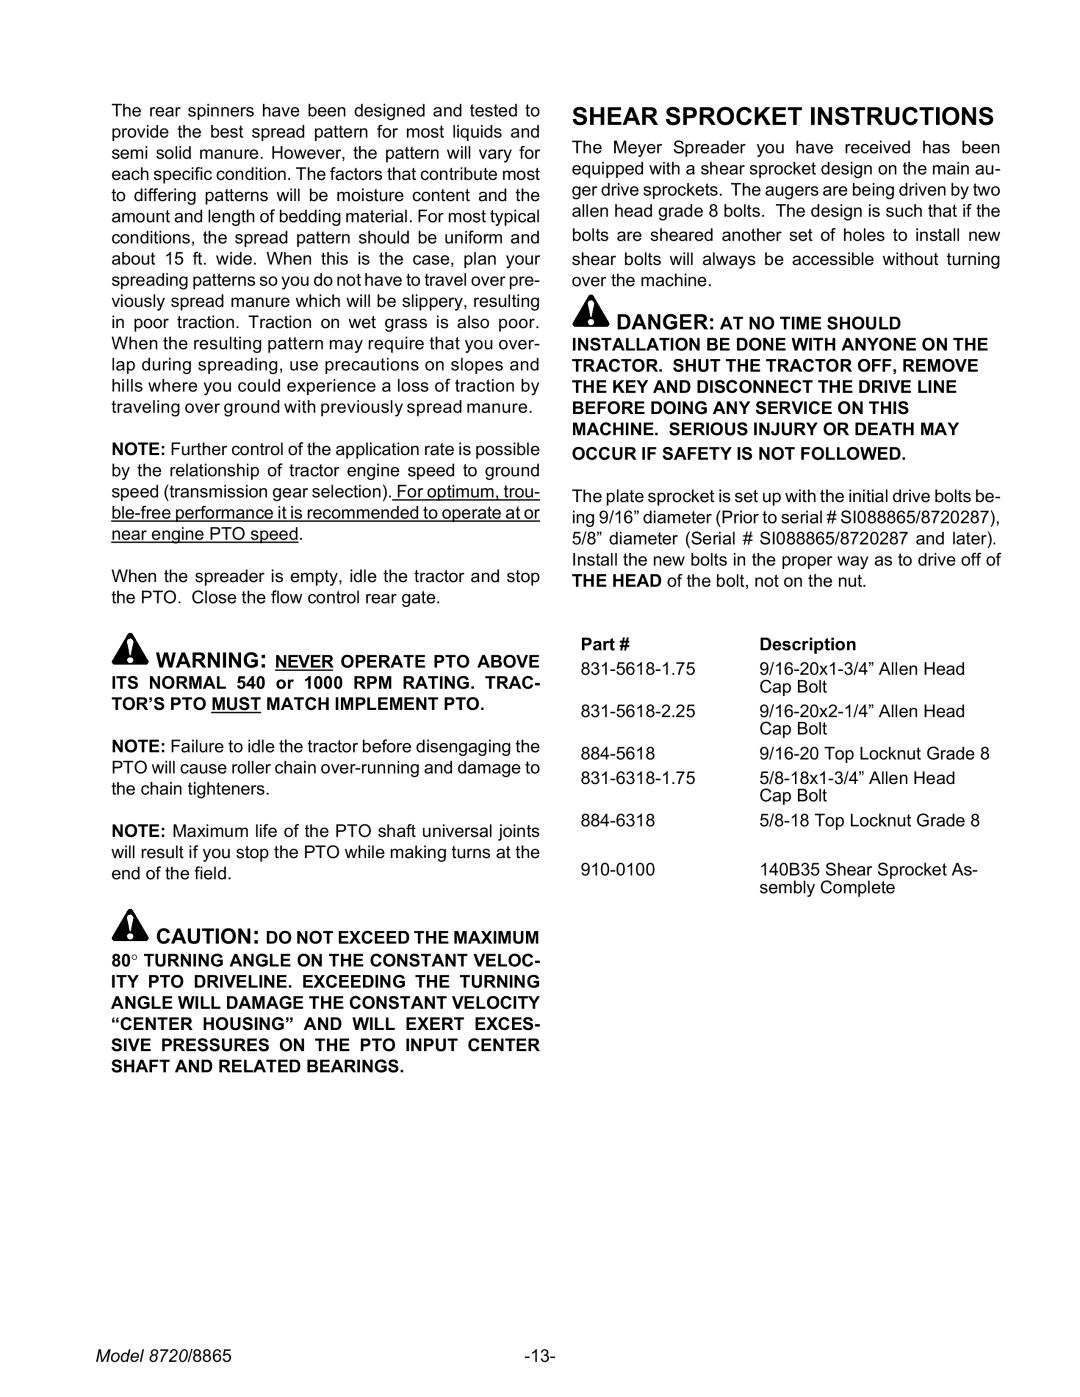 Meyer 8865, 8720 manual Shear Sprocket Instructions, Description 